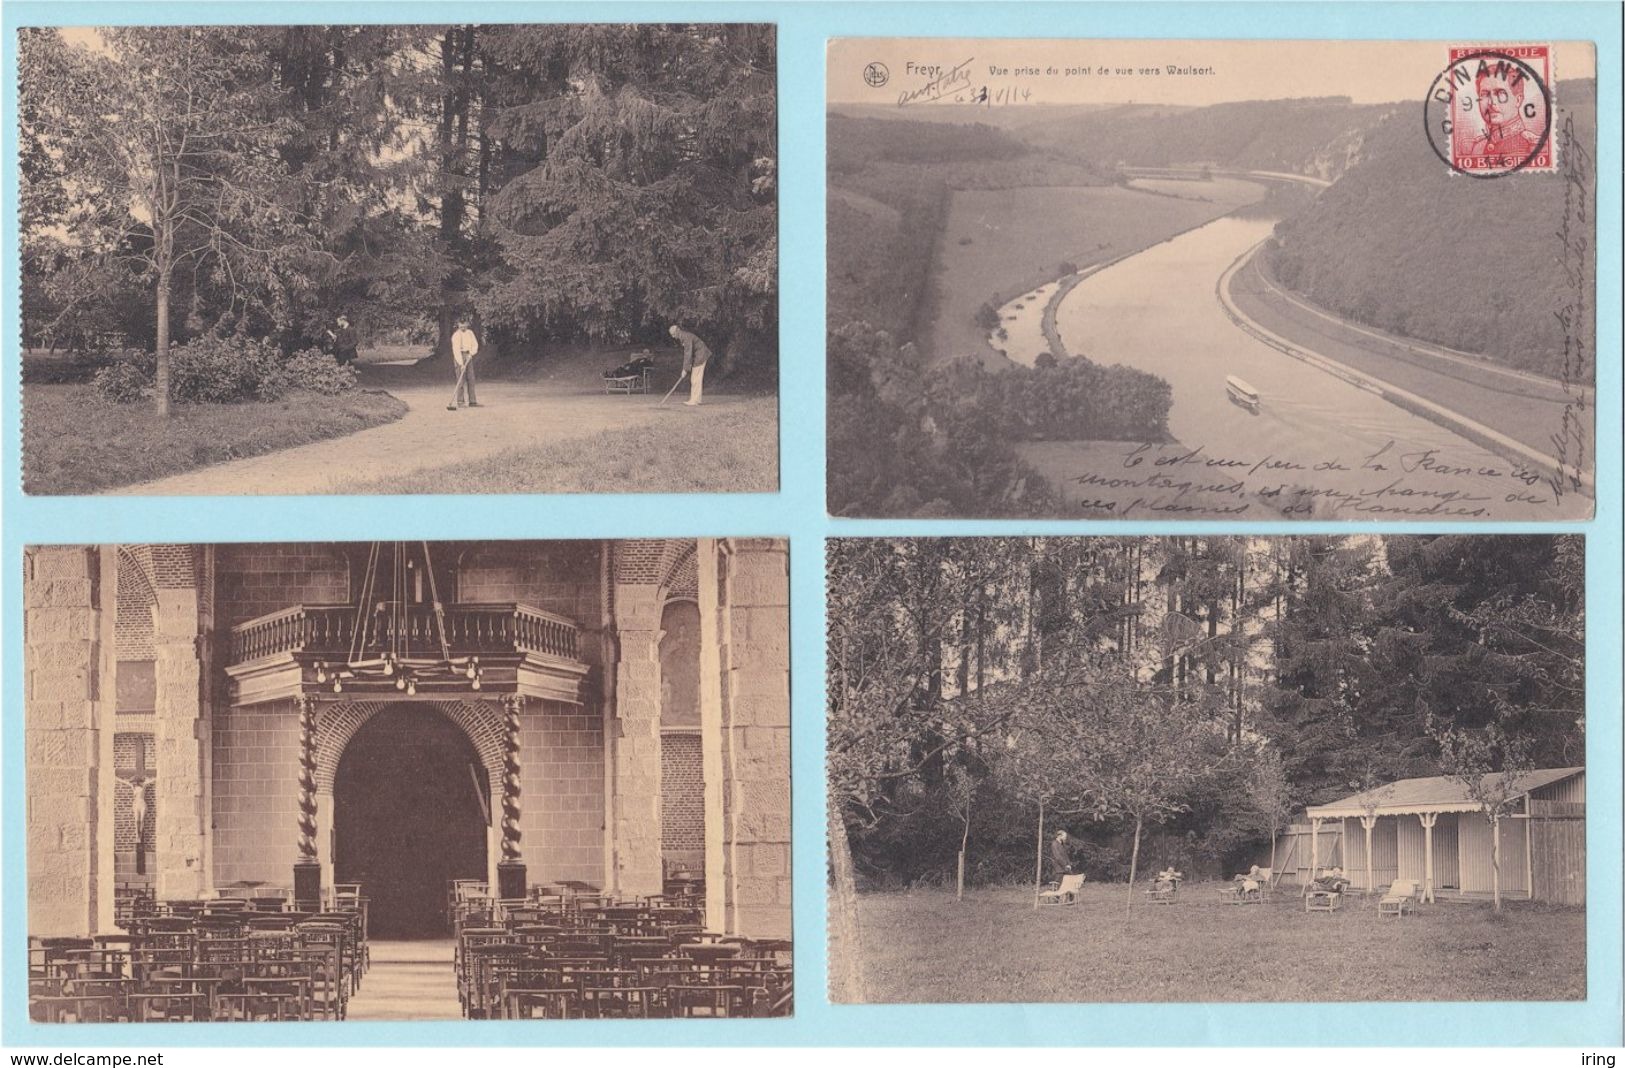 Beau lot de 60 cartes postales de Belgique Wallonie  Mooi lot van 60 postkaarten van Belgie Wallonie - 15 scans